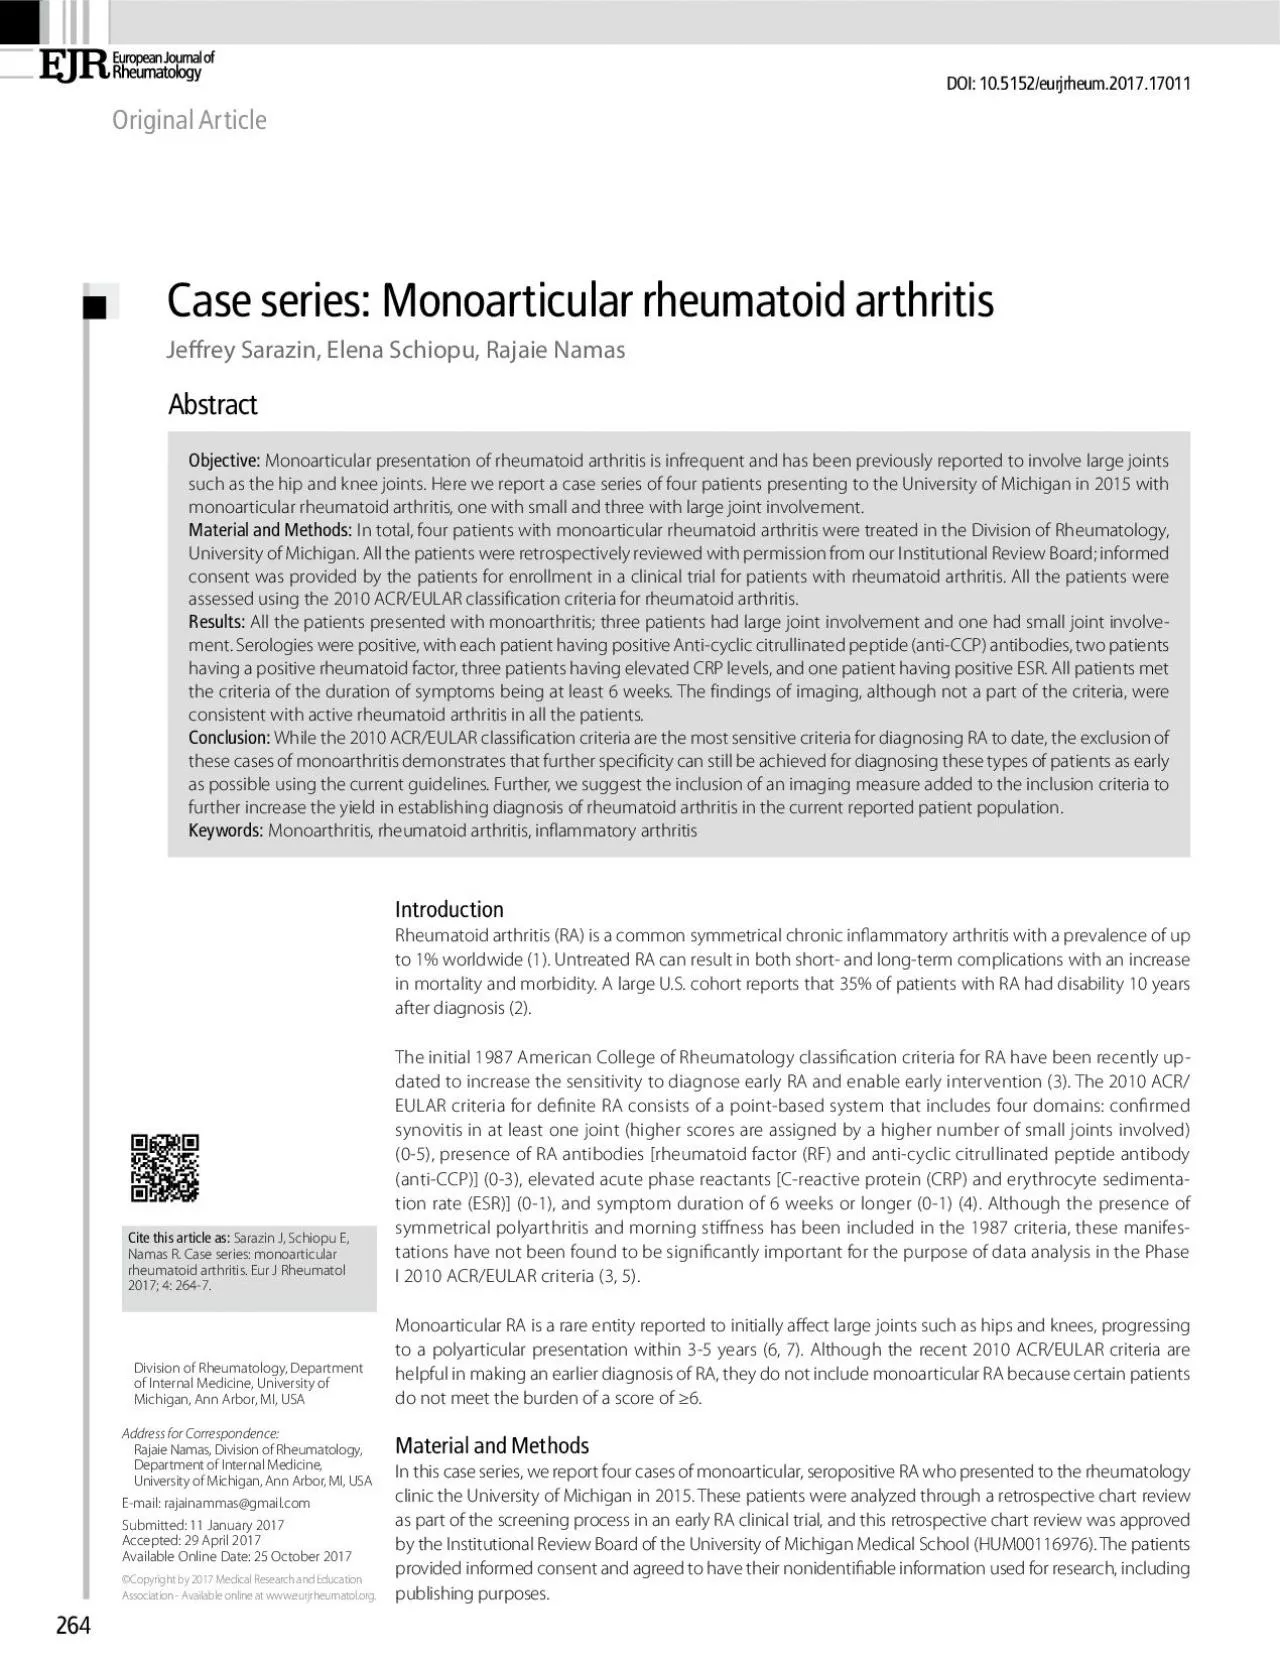 Case series Monoarticular rheumatoid arthritis Rheumatoid arthritis